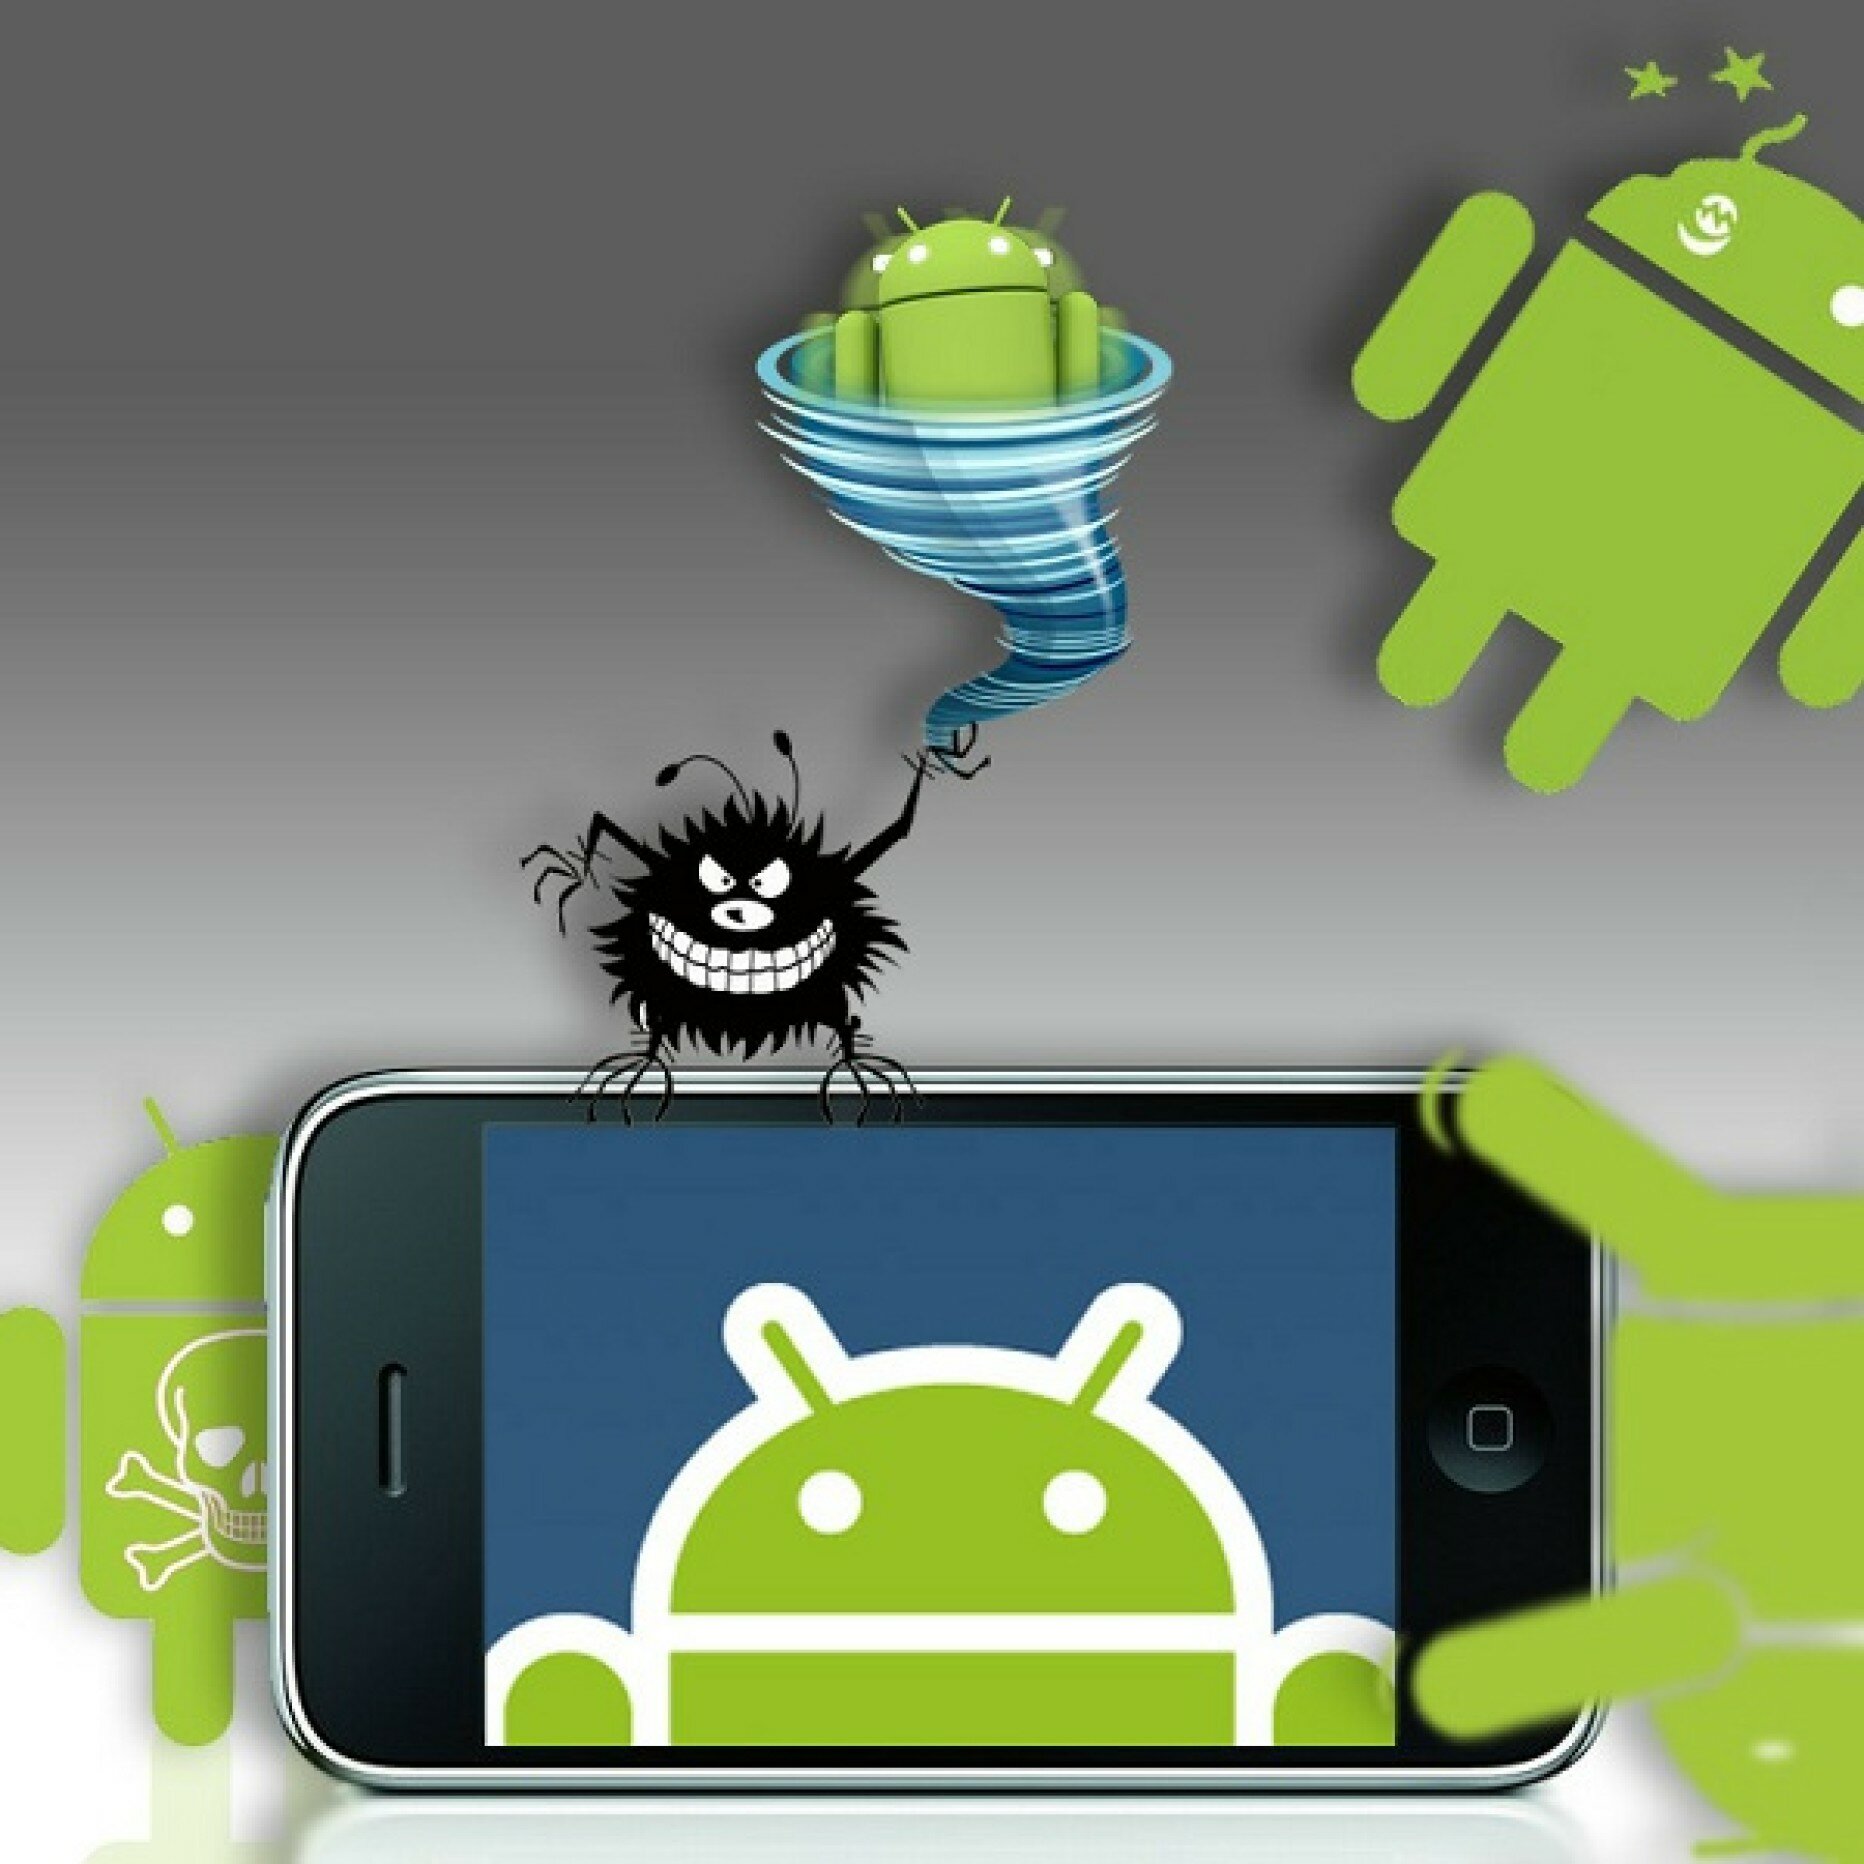 Антивирусное ПО для Android-устройств. Обзор основных антивирусов и актуальность их использования